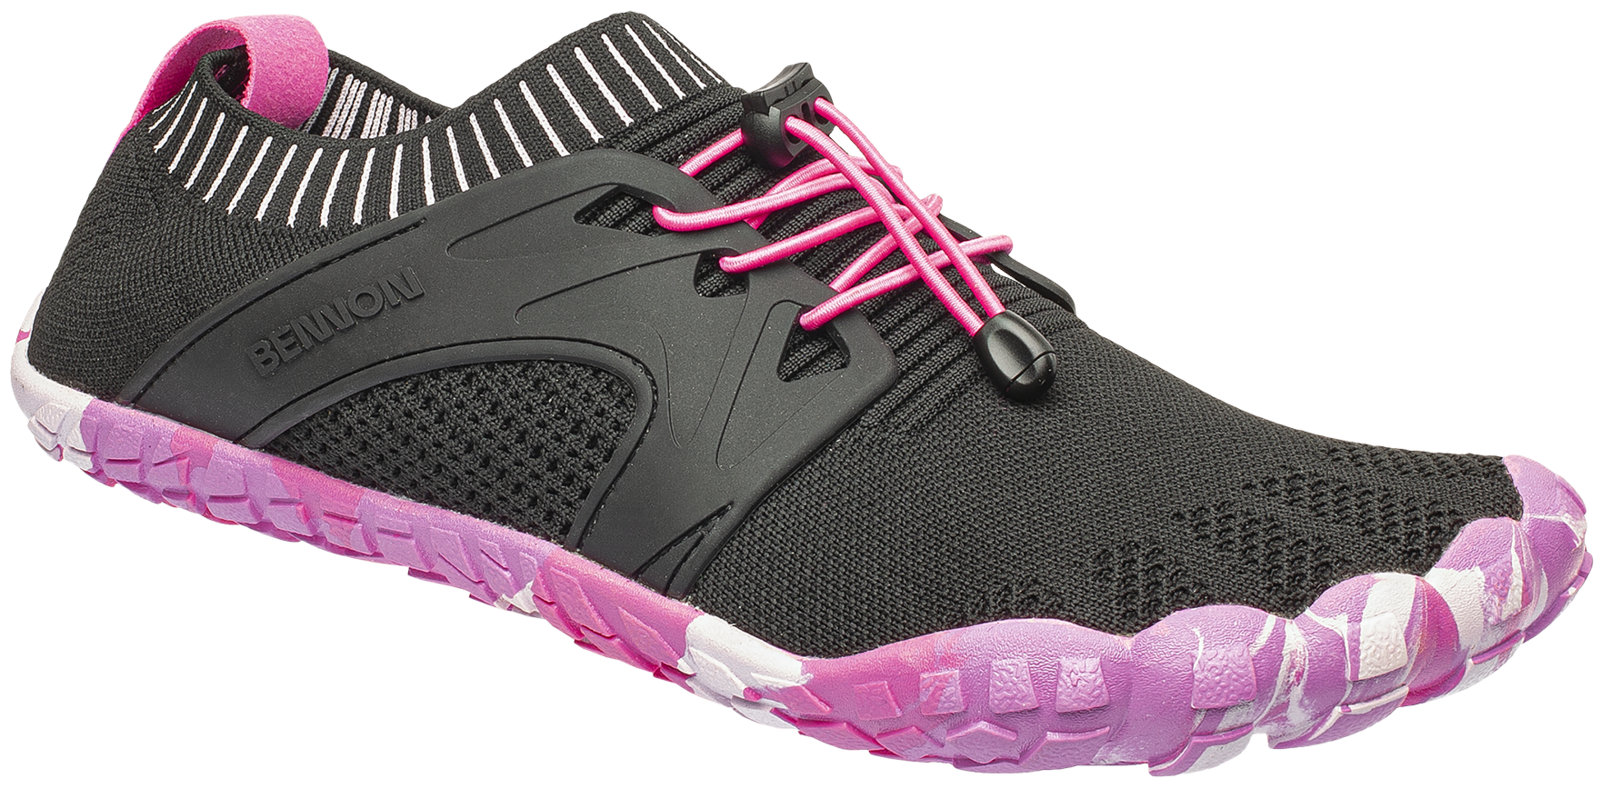 Voľnočasová barefoot obuv Bennon Bosky - veľkosť: 39, farba: čierna/ružová